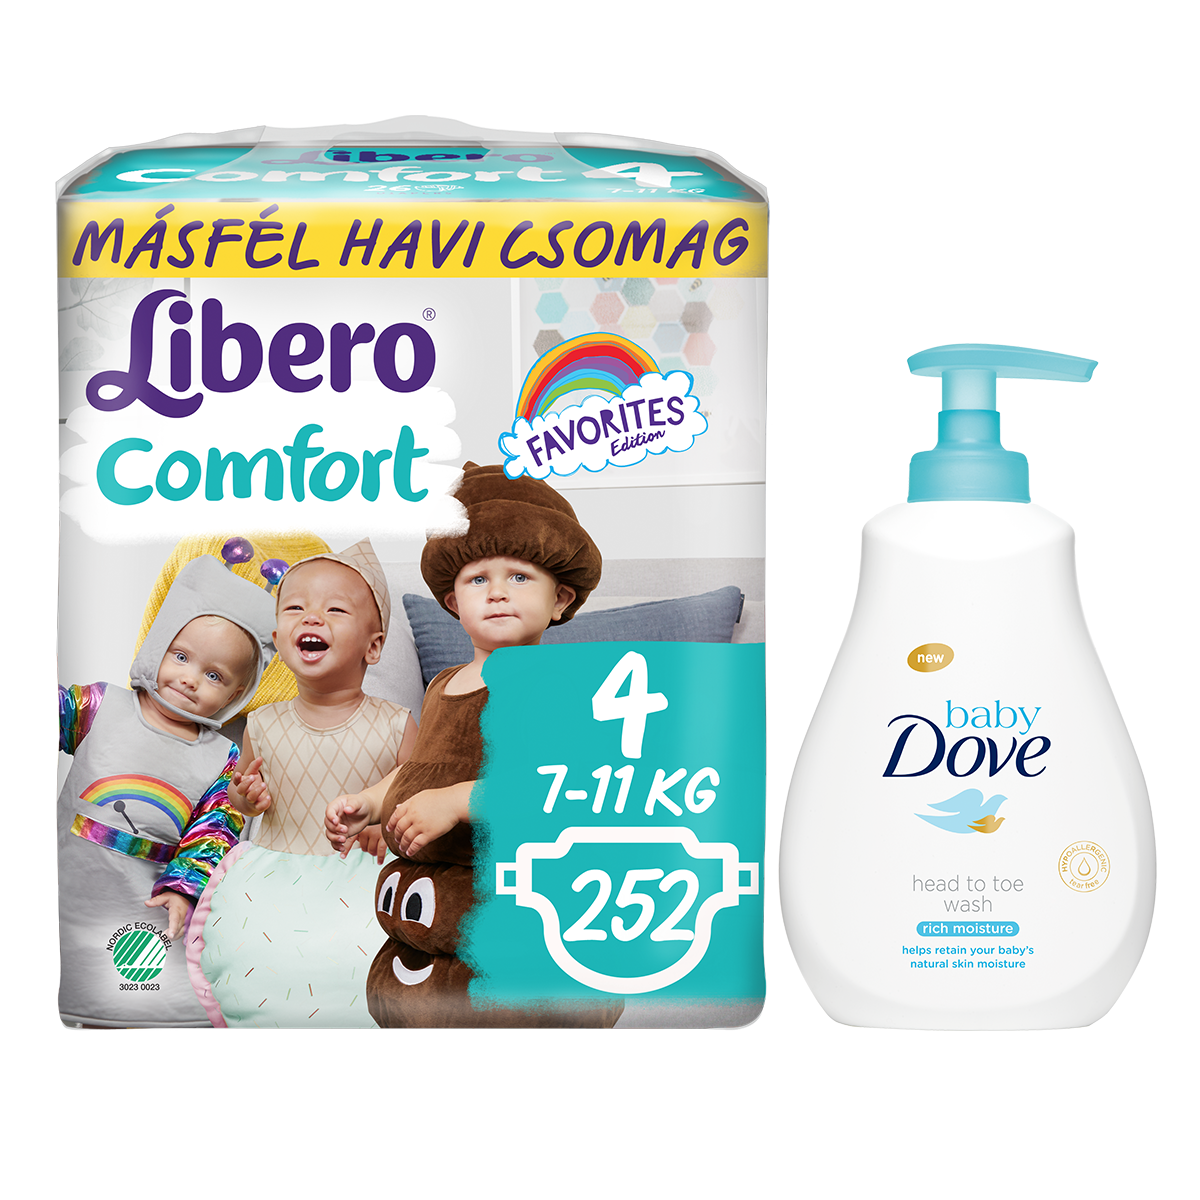 Libero Comfort másfél havi csomag pelenkák és Dove Baby fürdető 